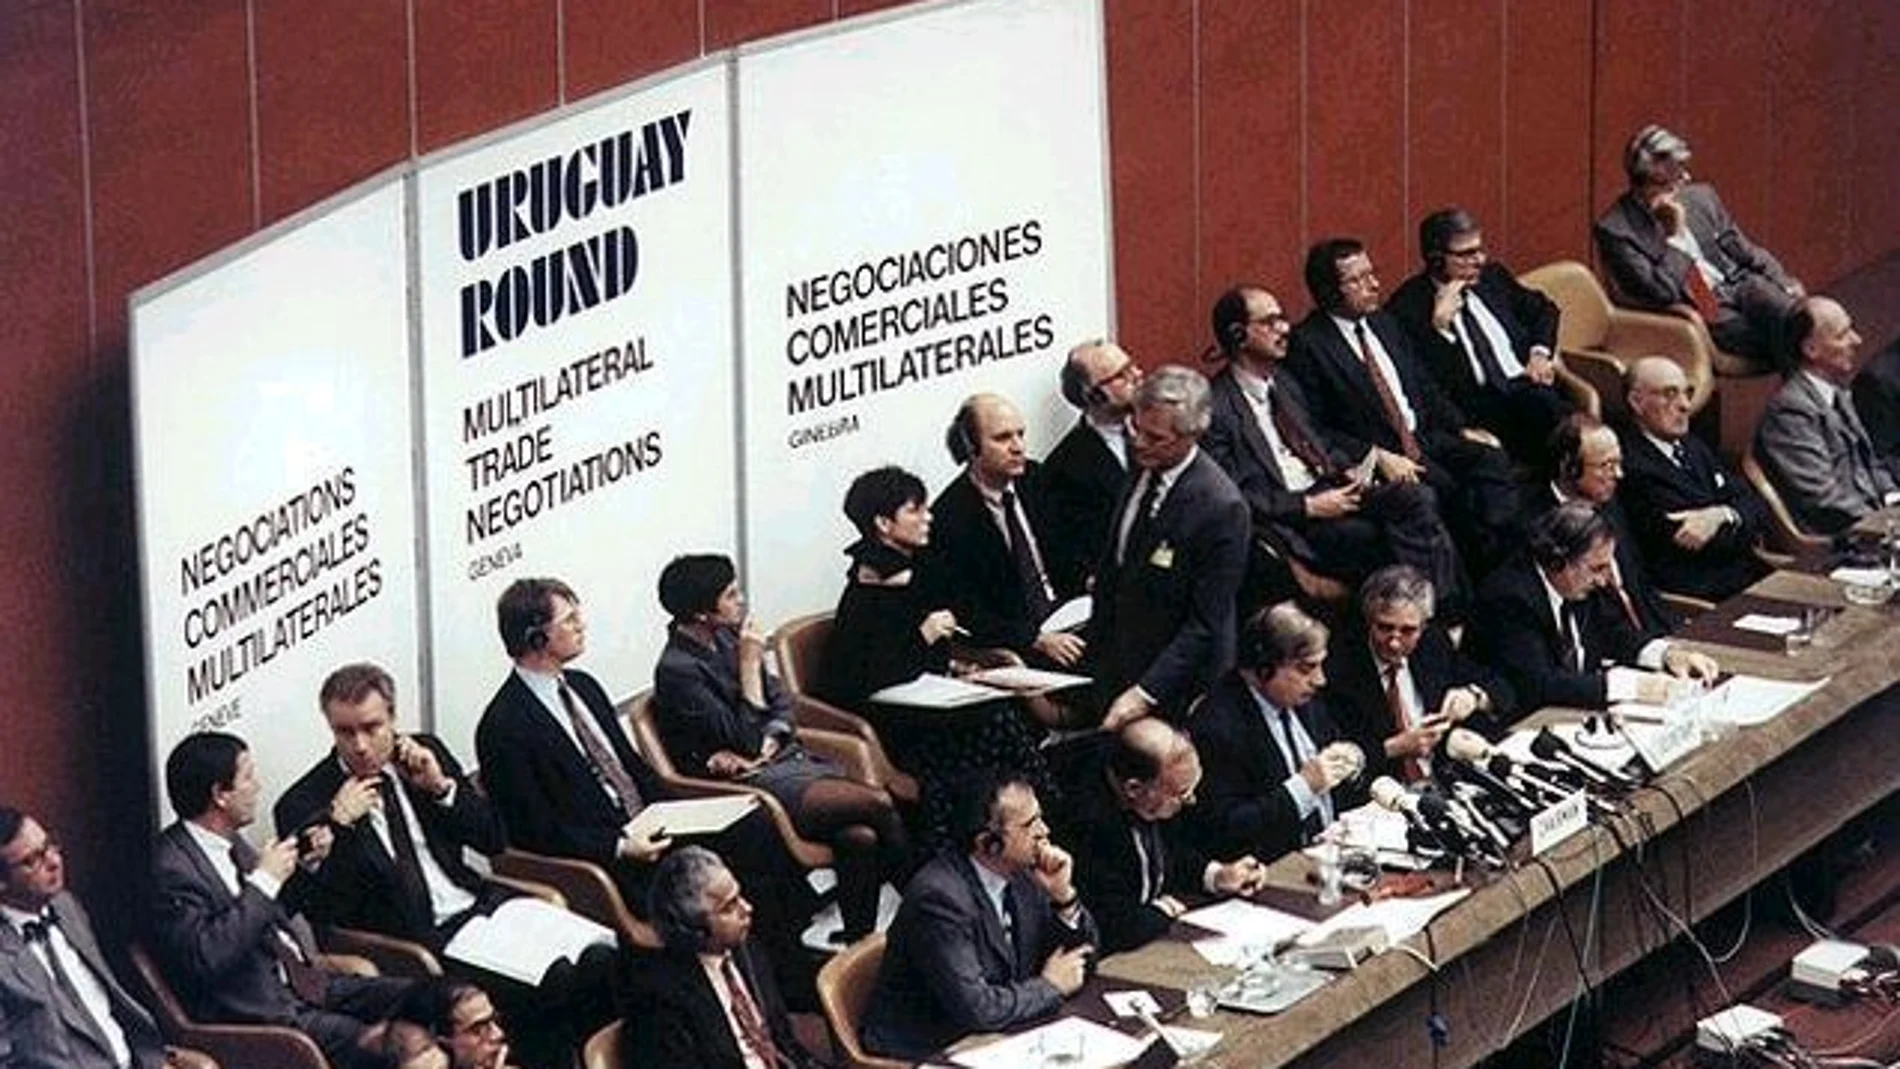 La Ronda de Uruguay fue la octava ronda de las negociaciones comerciales multilaterales llevadas a cabo en el marco del Acuerdo General sobre Aranceles Aduaneros y Comercio desde 1986 a 1994